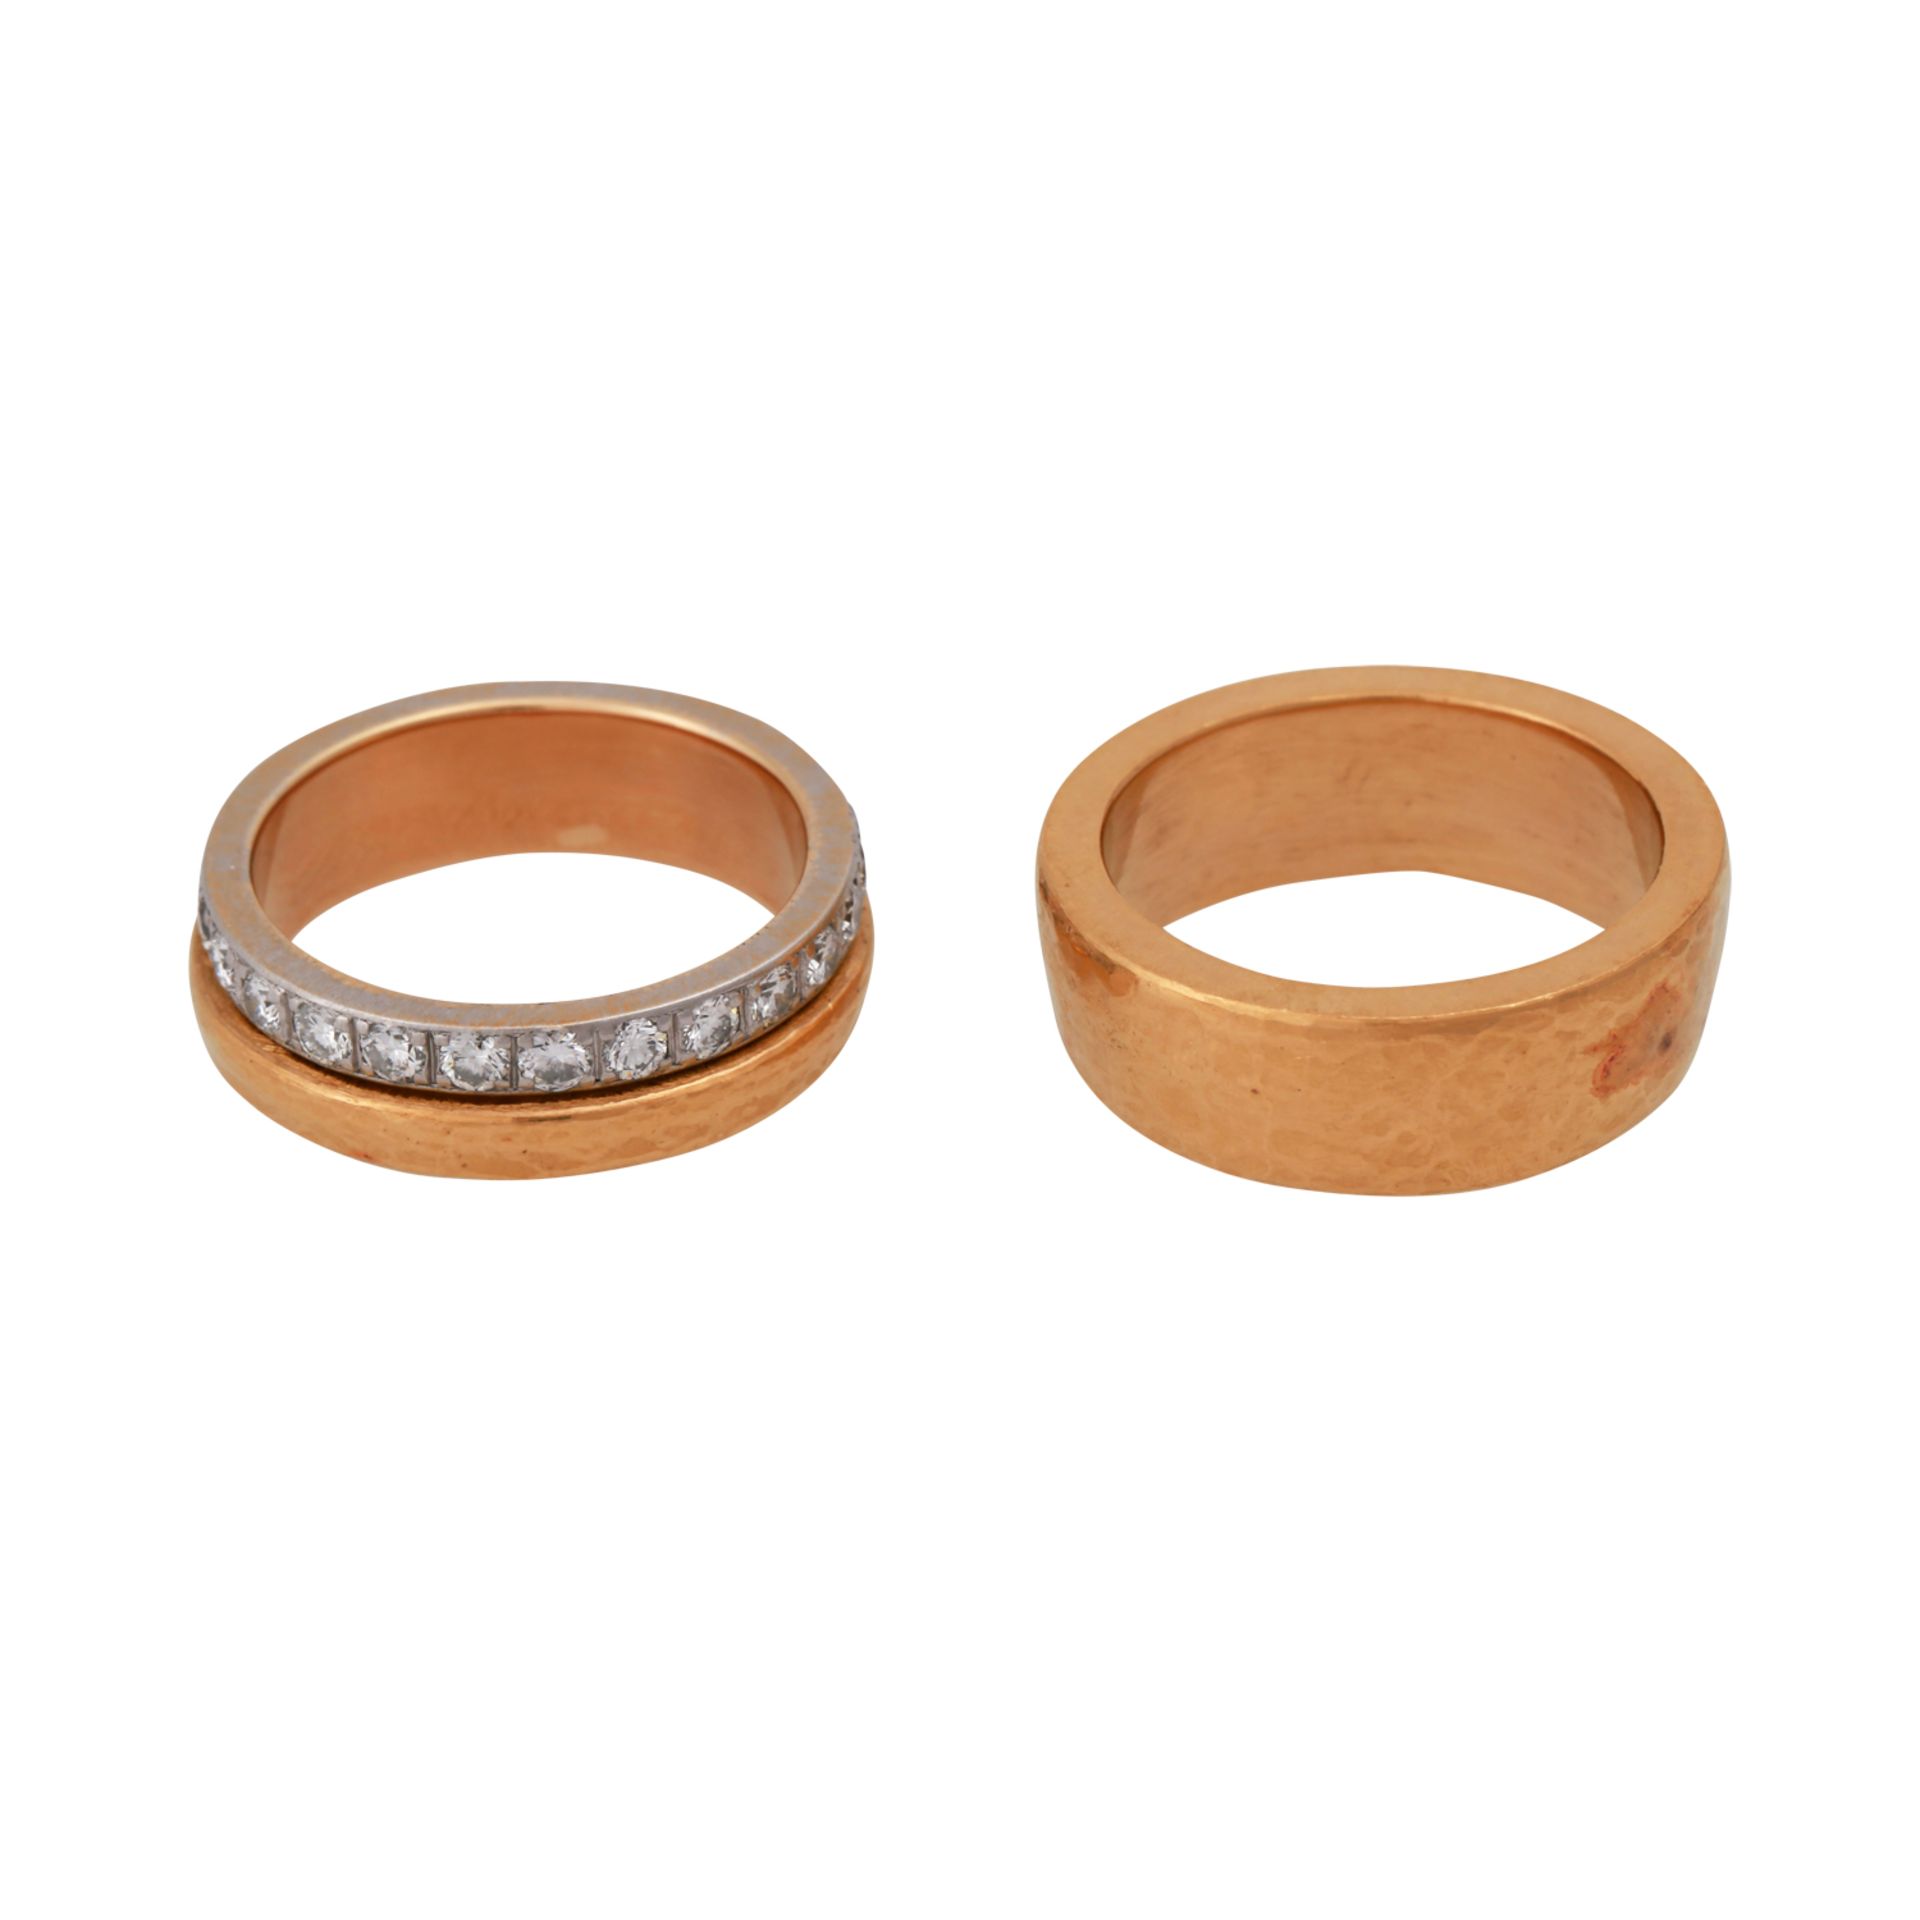 2 Ringe, davon 1 mit Brillantenvon zus. ca. 1,4 ct, gute Farbe u. Reinheit, GG 22,8K+Platin, RW: 56; - Bild 3 aus 5